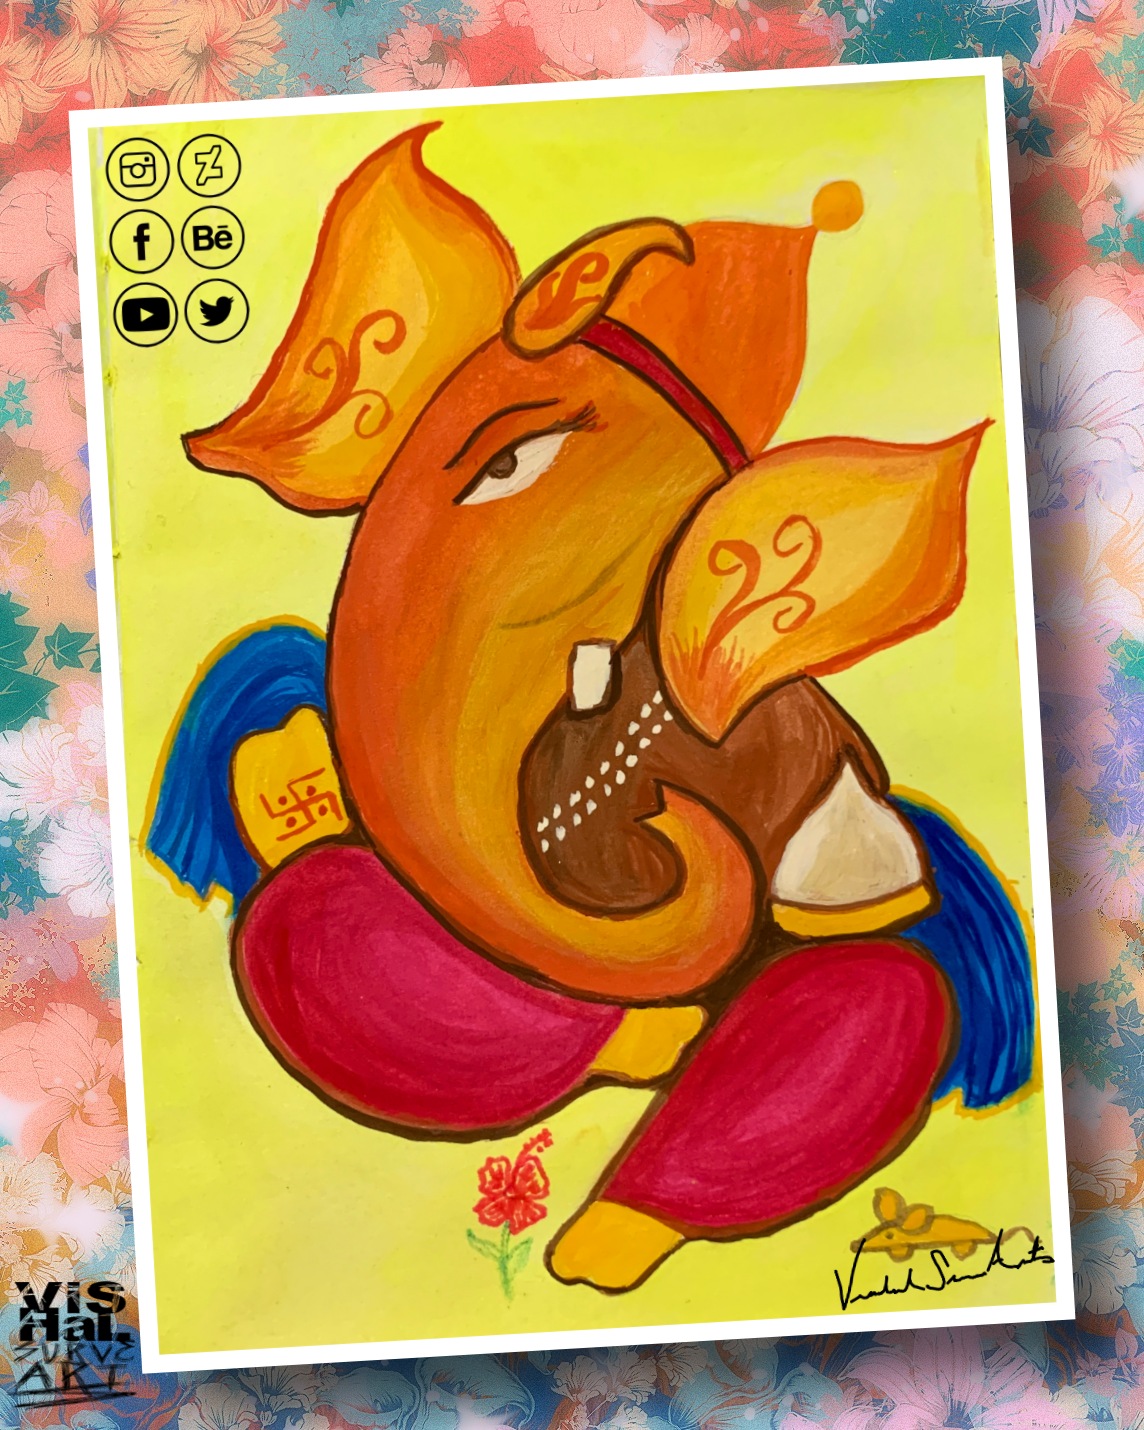 Shree Ganesha Watercolor 3 by vishalsurvearts on DeviantArt